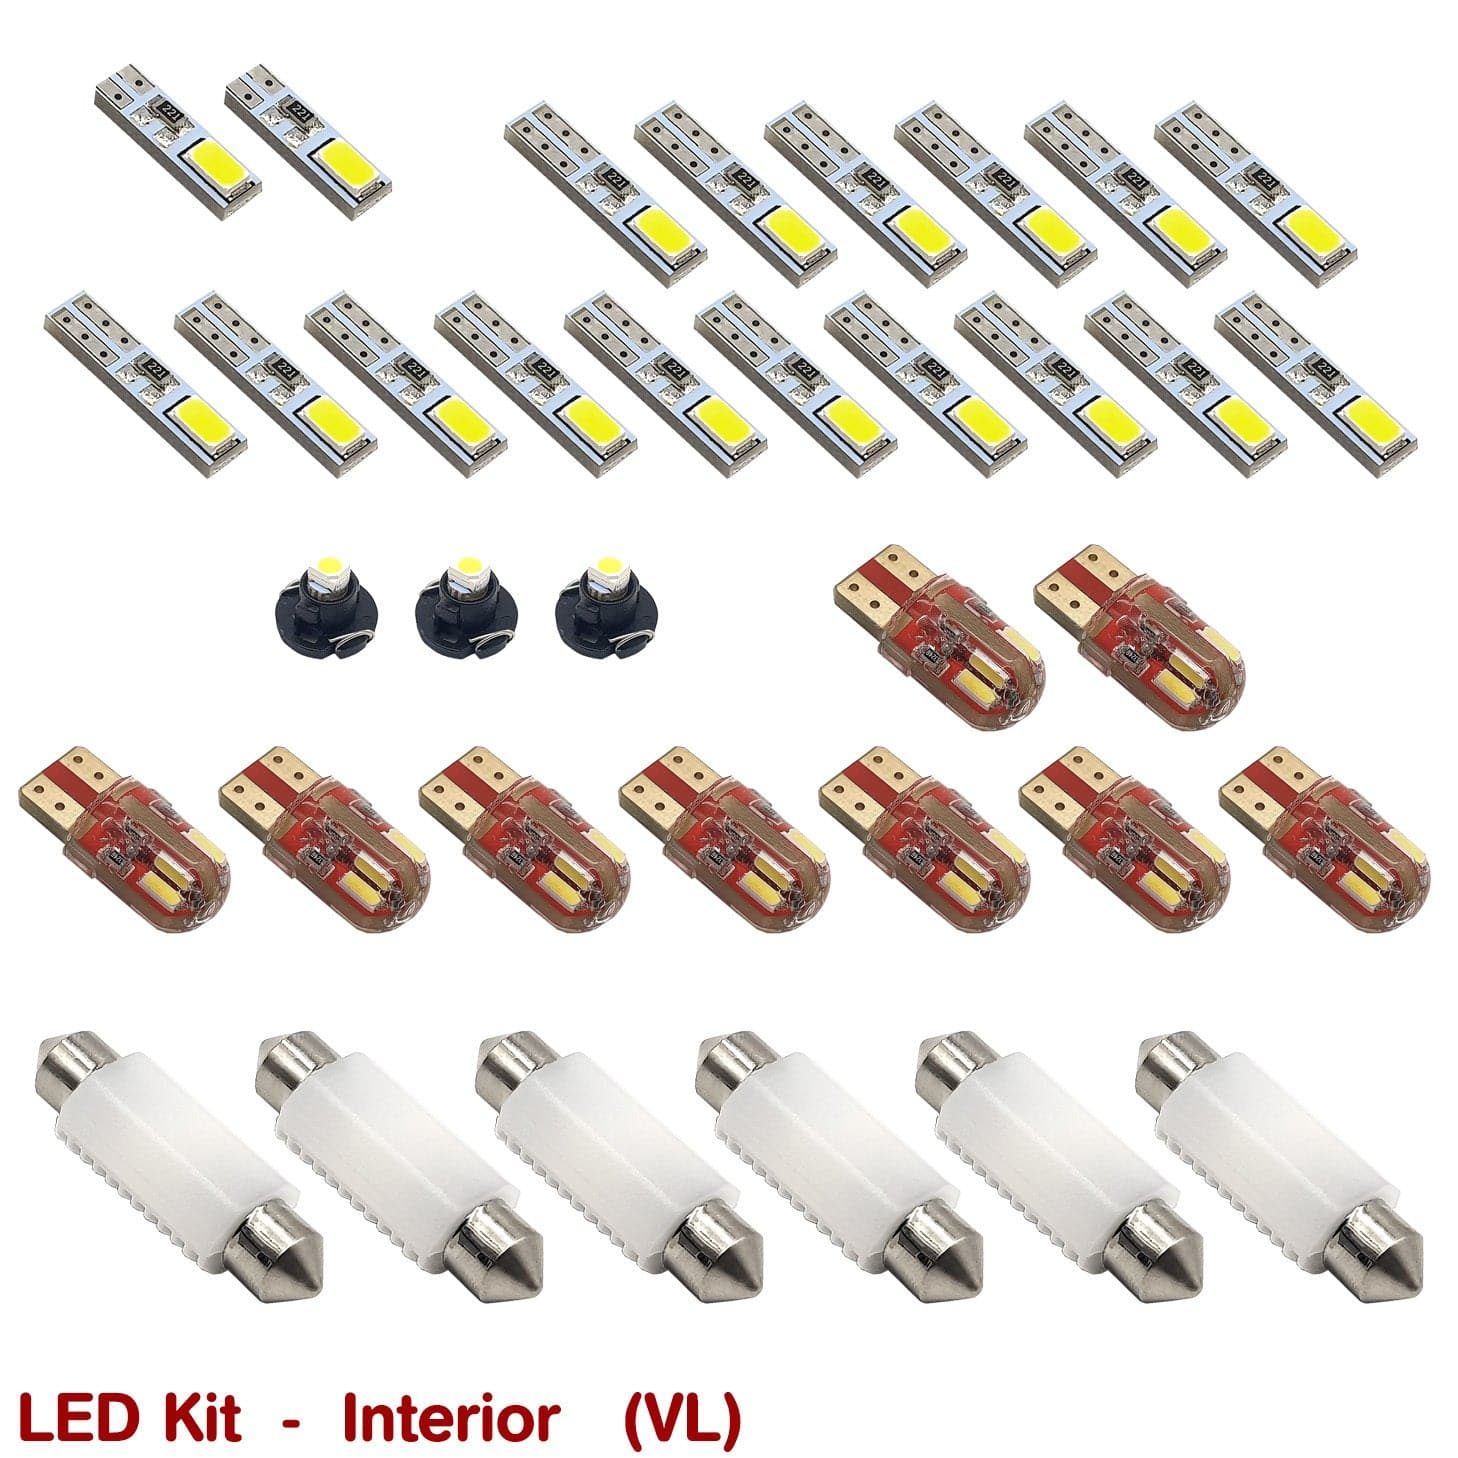 INTERIOR LED KIT for VL